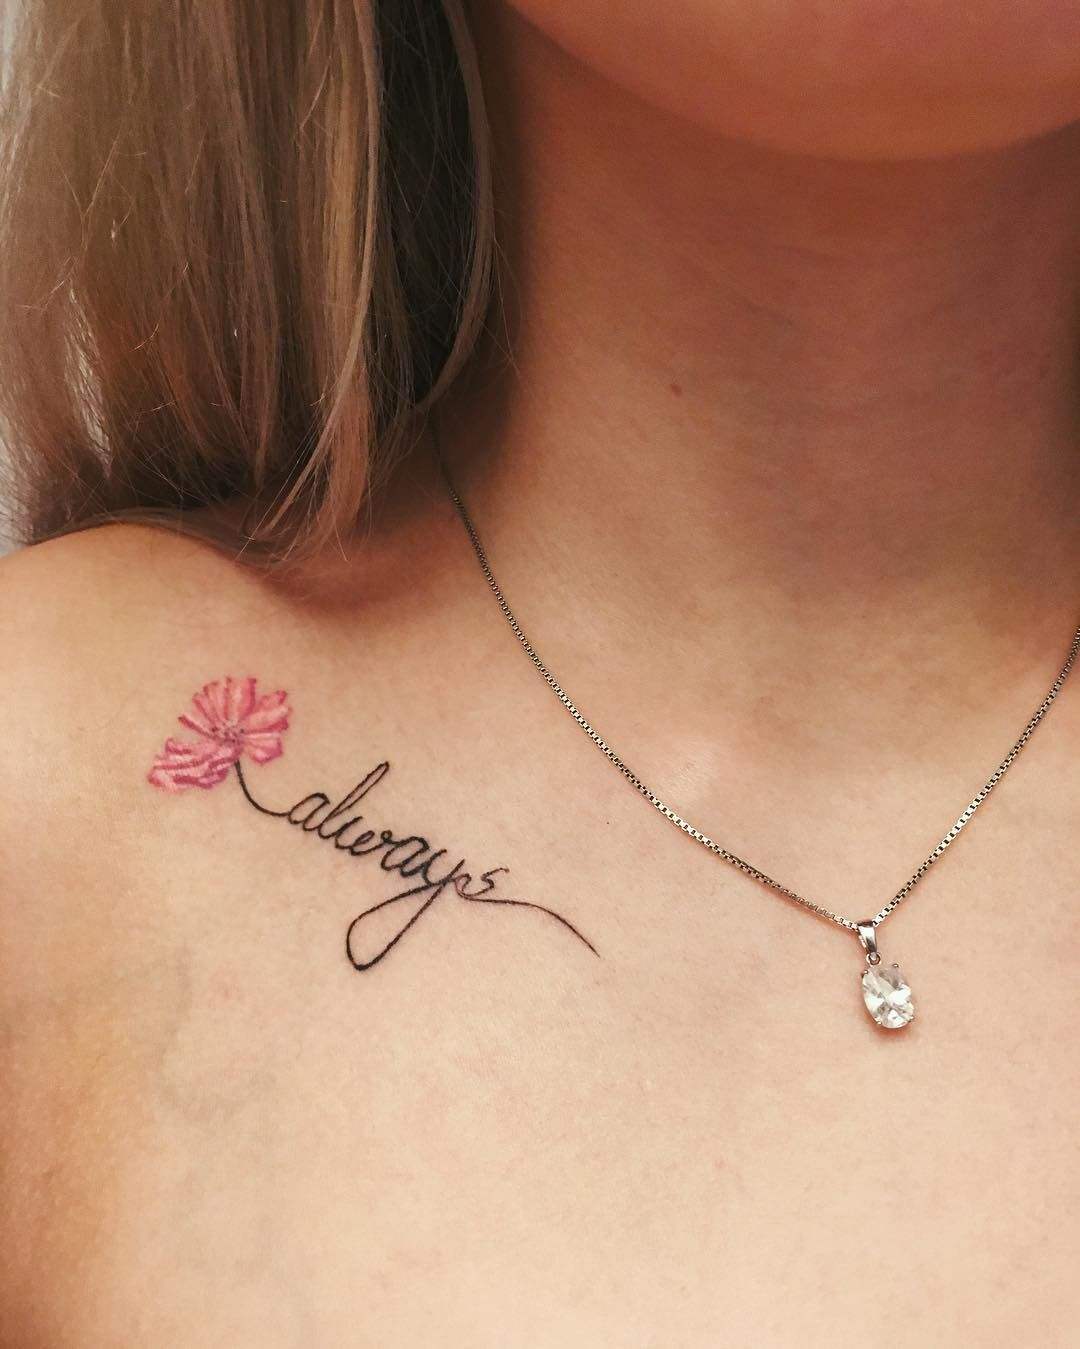 Letras pequenas de tatuagem de clavícula com mulheres com design de tatuagem de flor